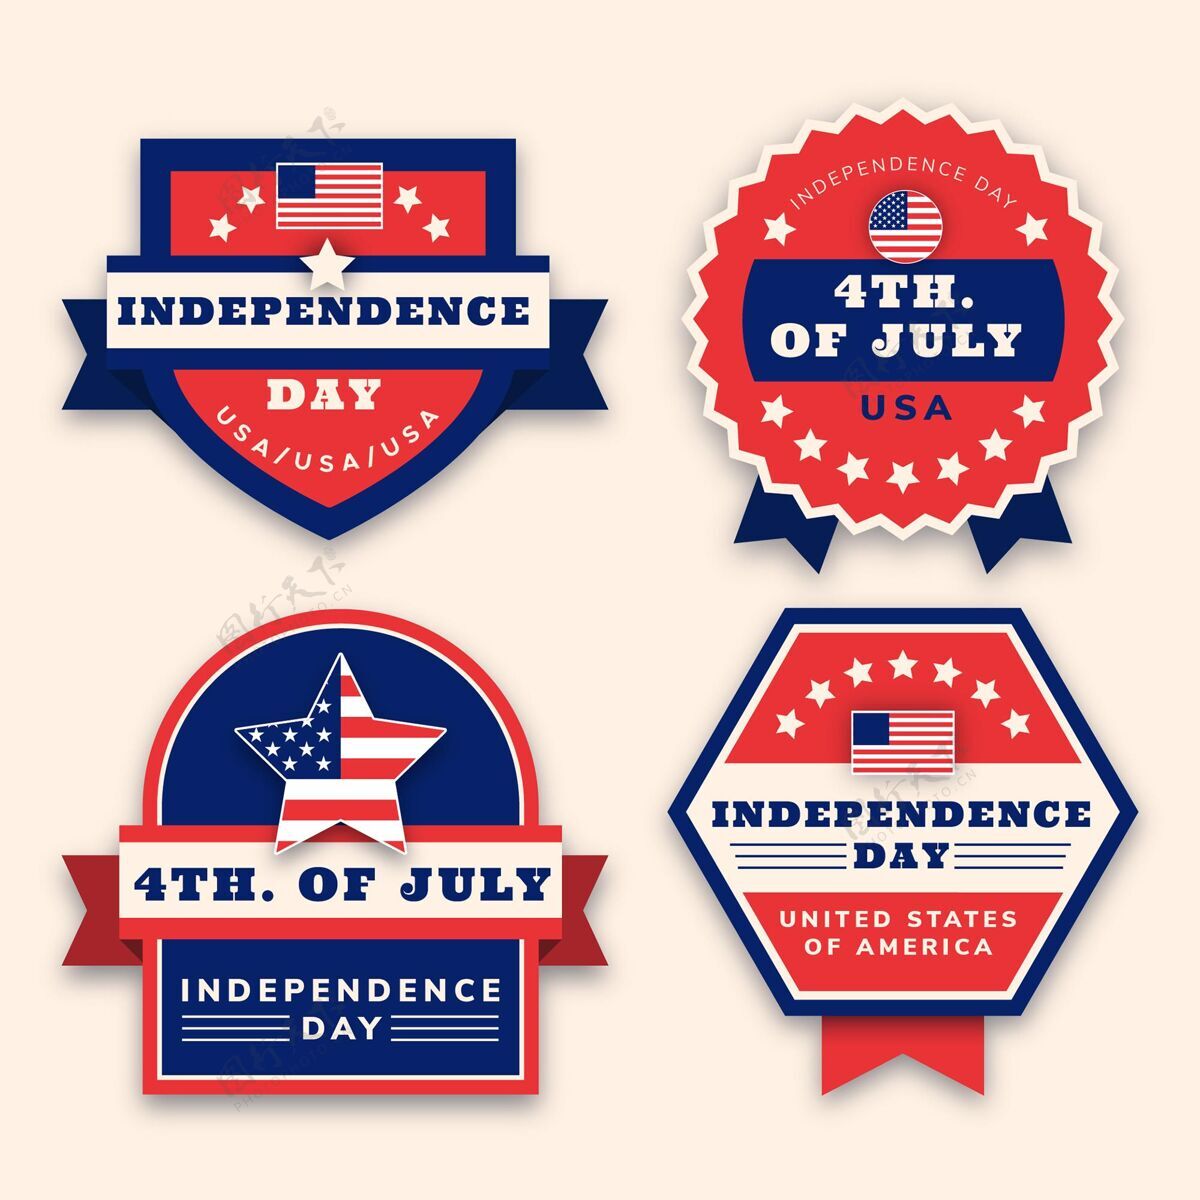 节日七月四日公寓-独立日标签系列徽章收藏7月4日独立日徽章